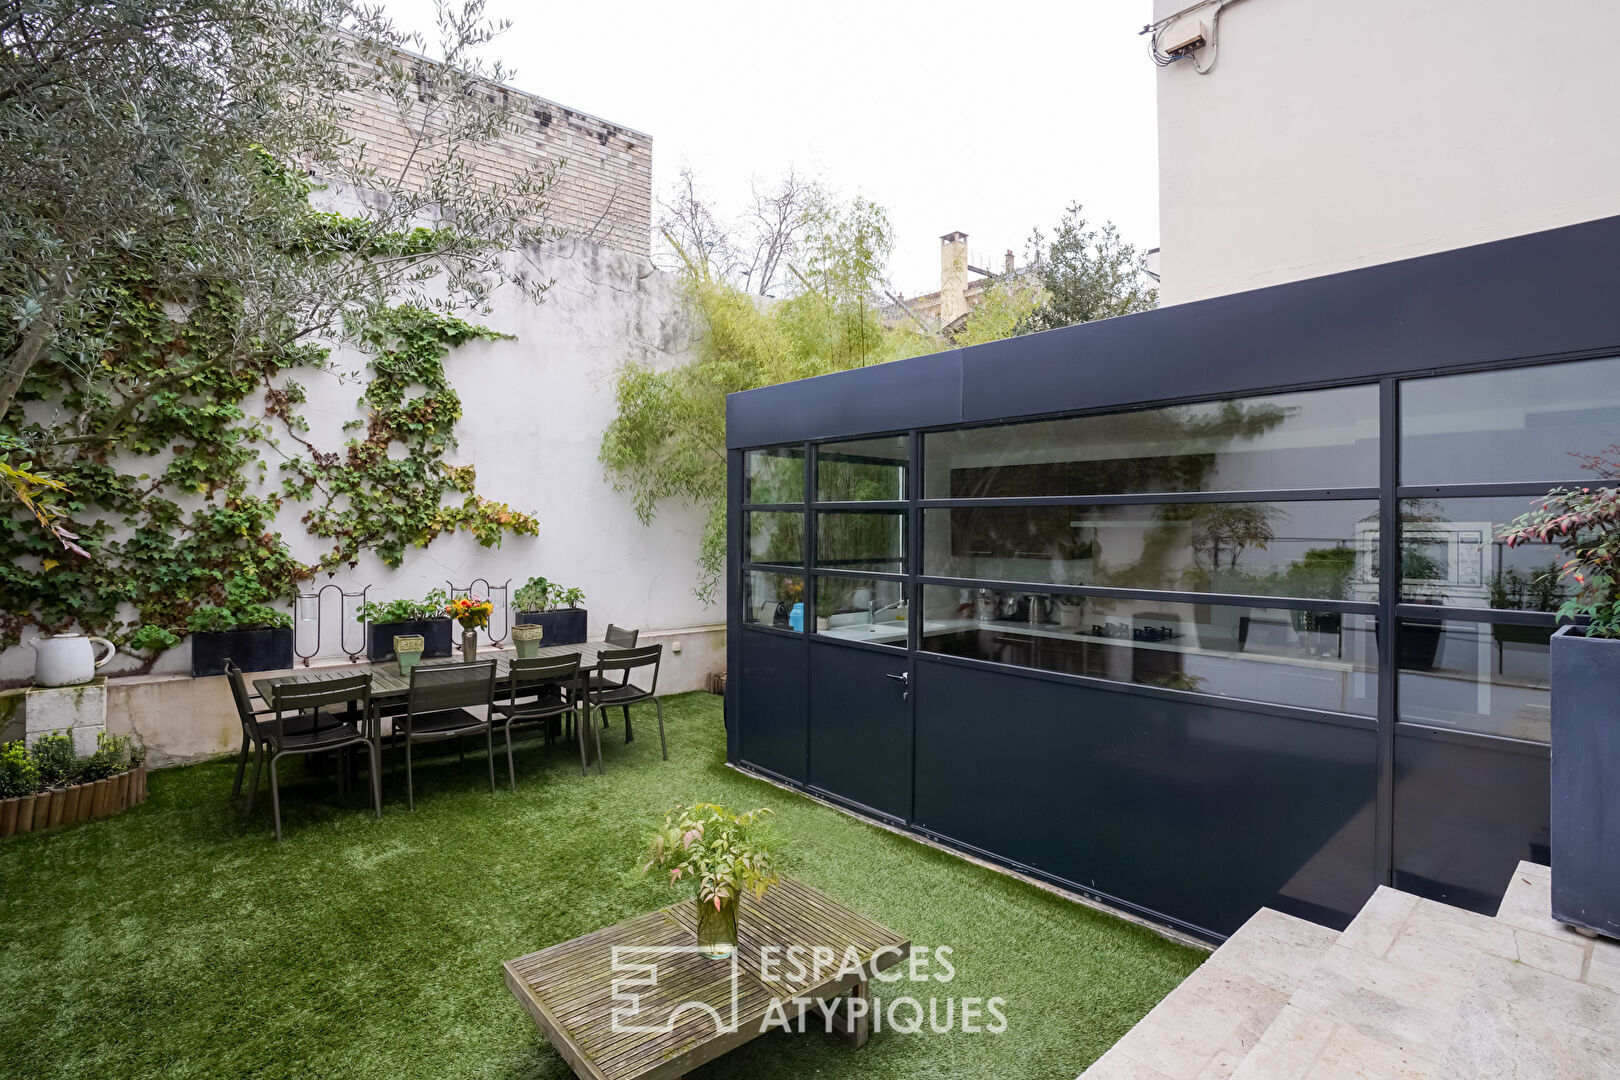 Maison avec jardin d’inspiration Mallet Stevens au coeur de Boulogne